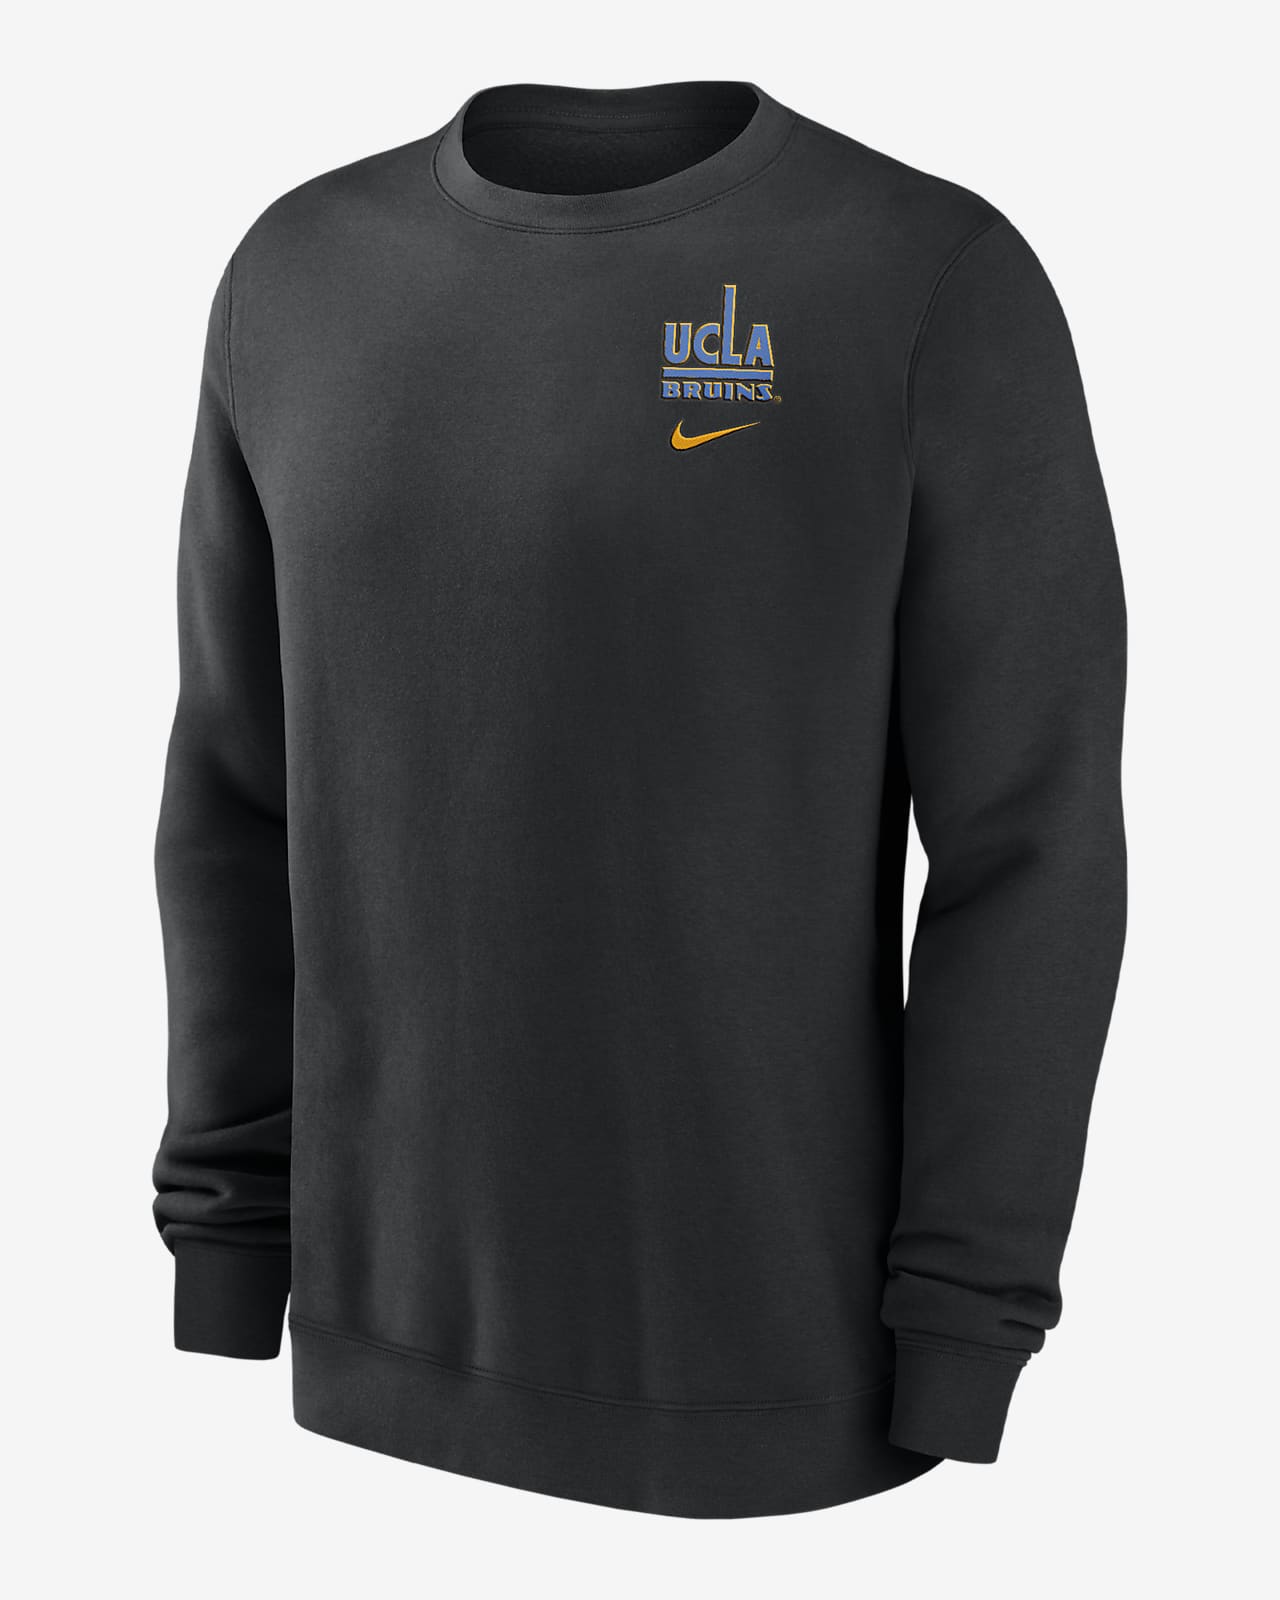 UCLA Club Fleece Men's Nike College Sweatshirt